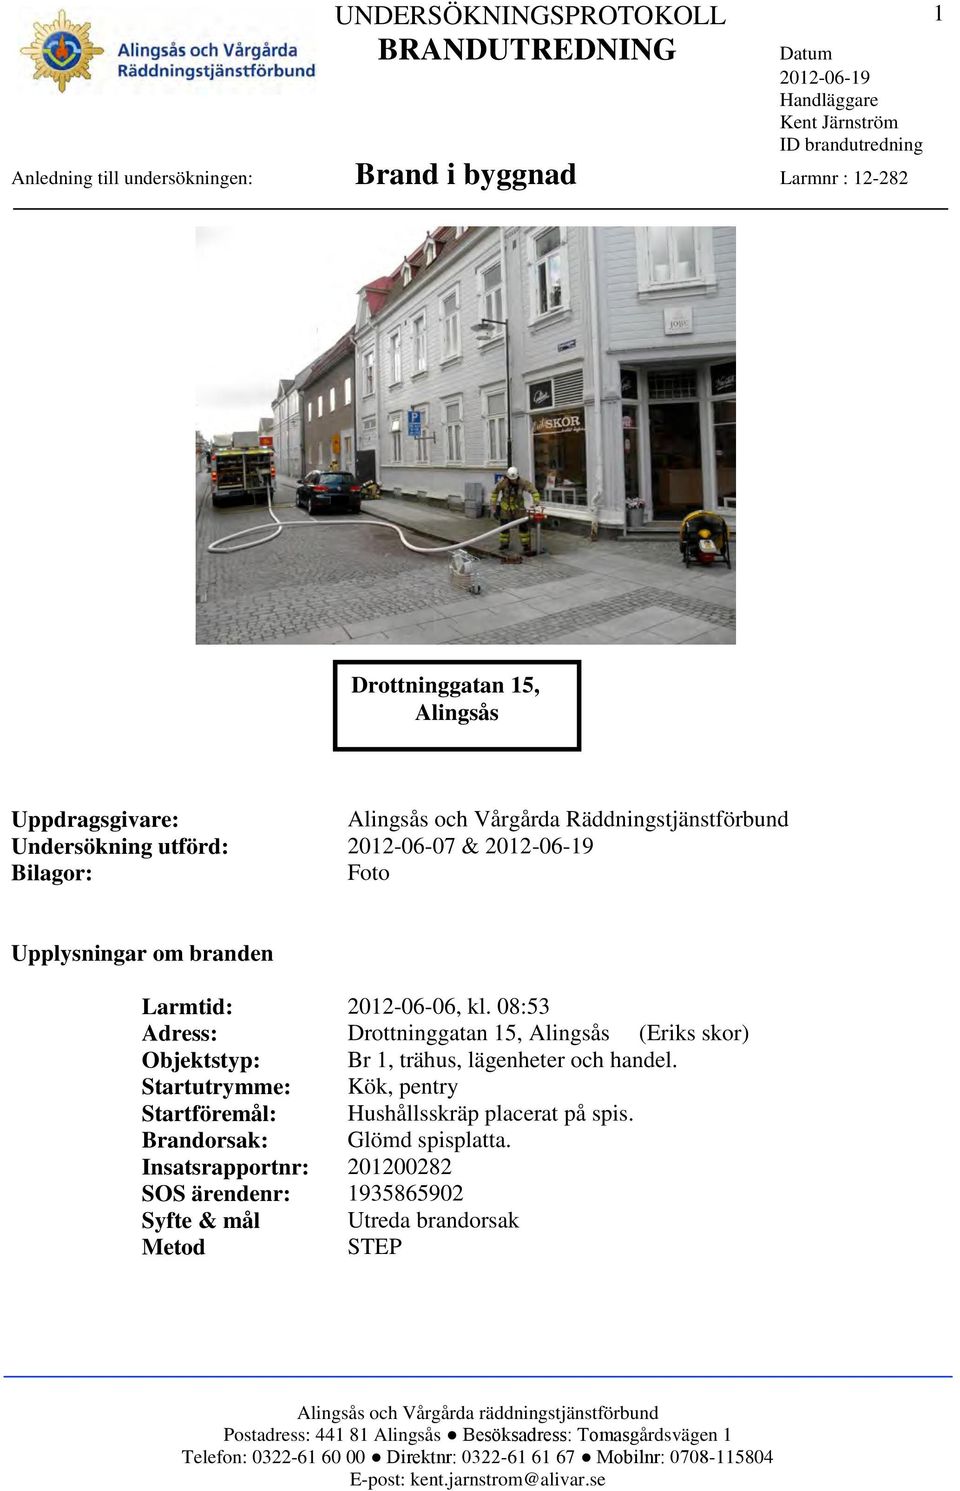 08:53 Adress: Drottninggatan 15, Alingsås (Eriks skor) Objektstyp: Br 1, trähus, lägenheter och handel.